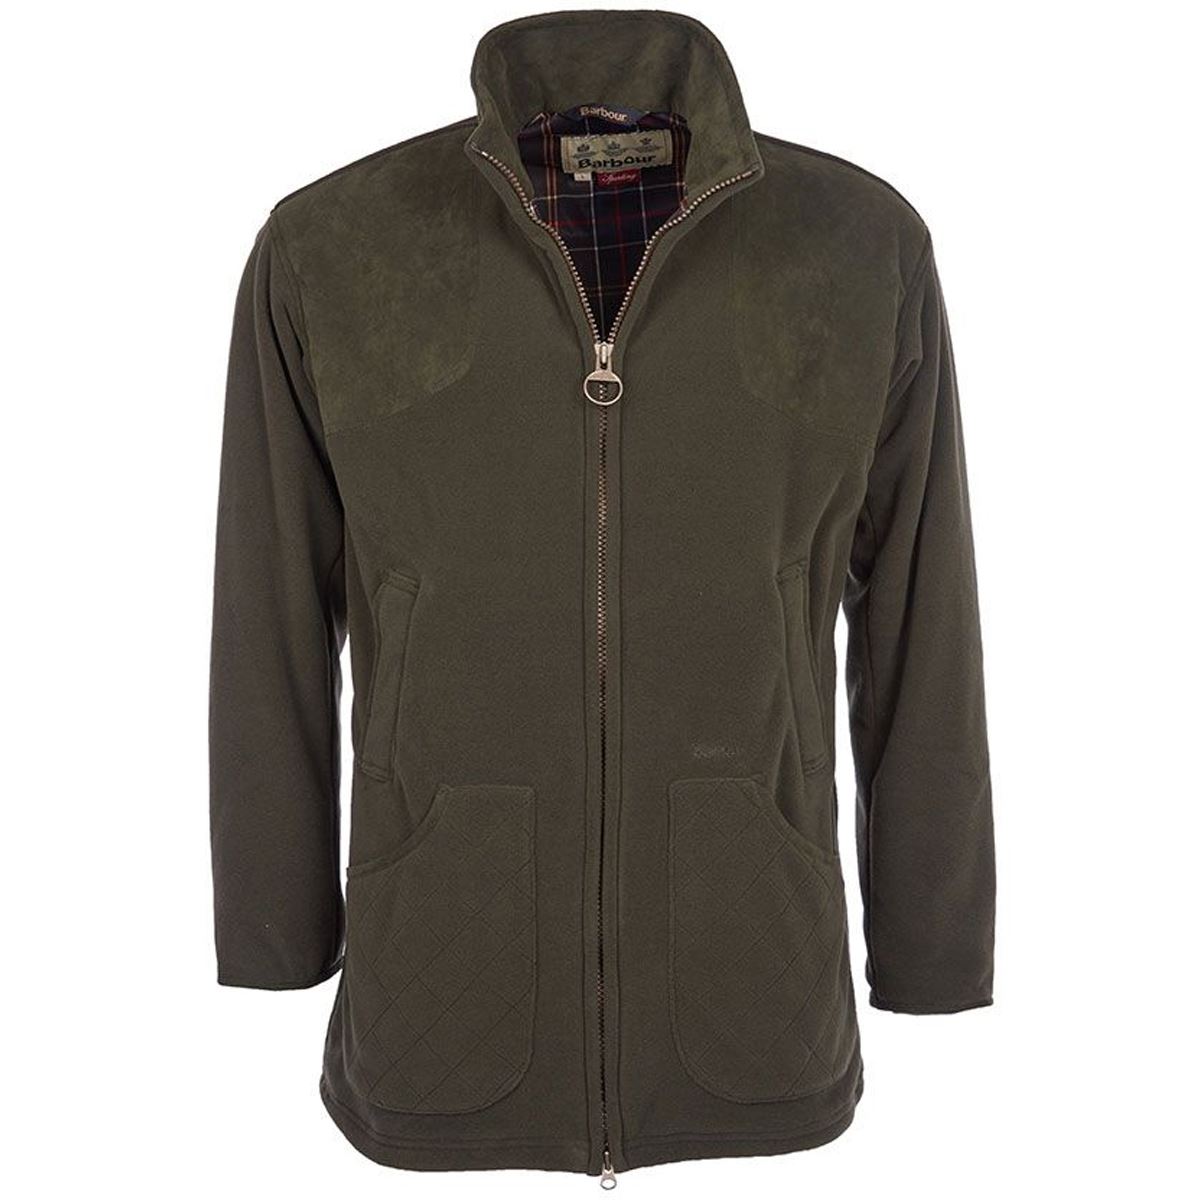 What is the design of the Barbour Dunmoor Fleece jacket?